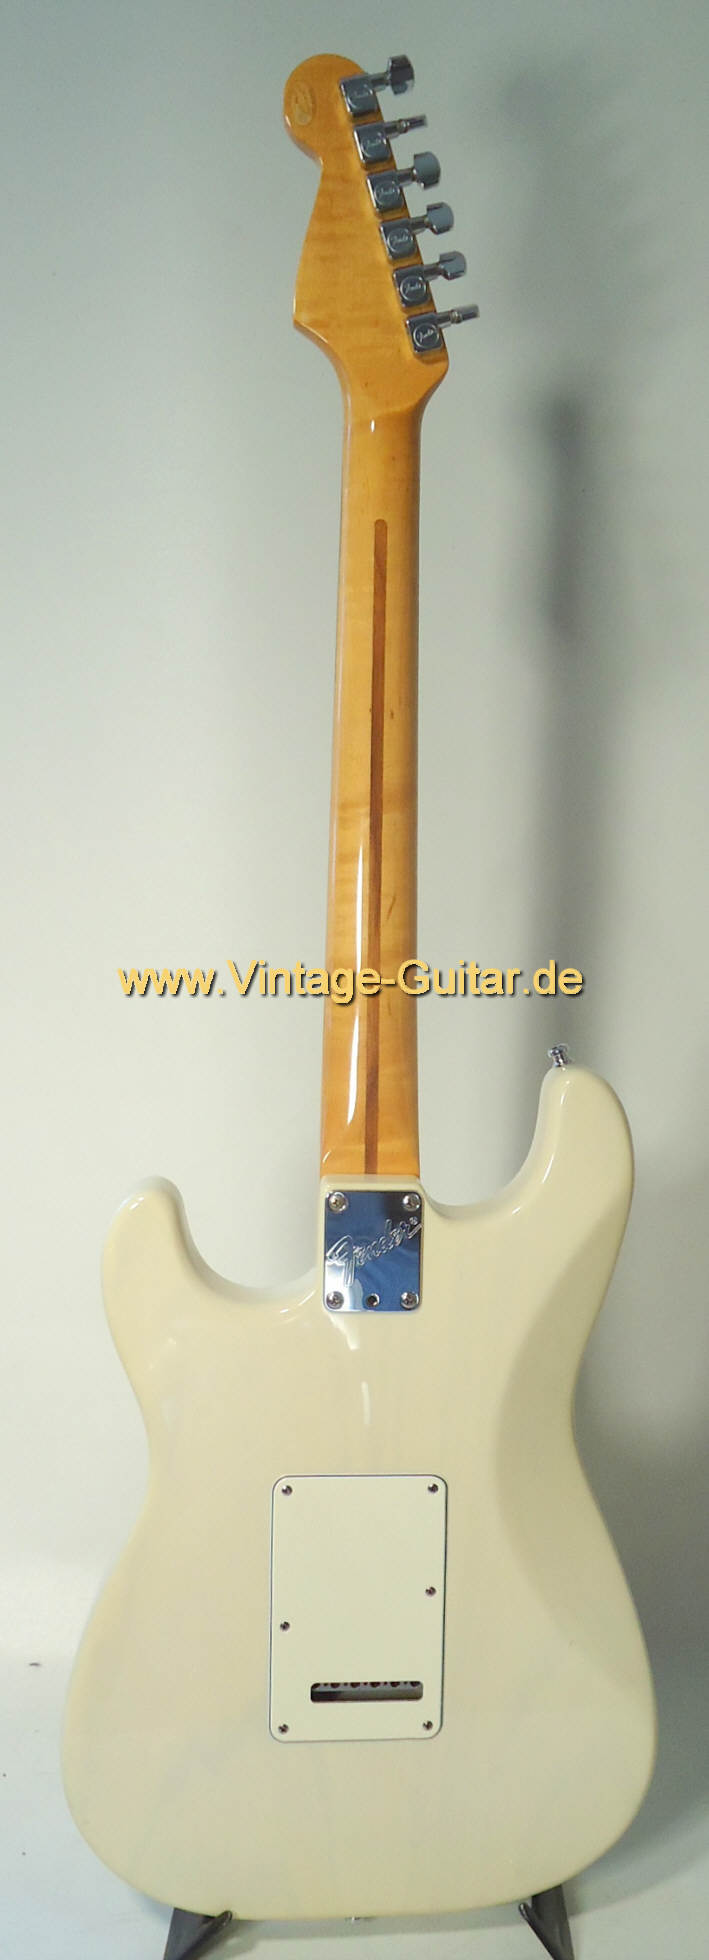 Fender-Stratocaster-1989-CC-blonde-d.jpg